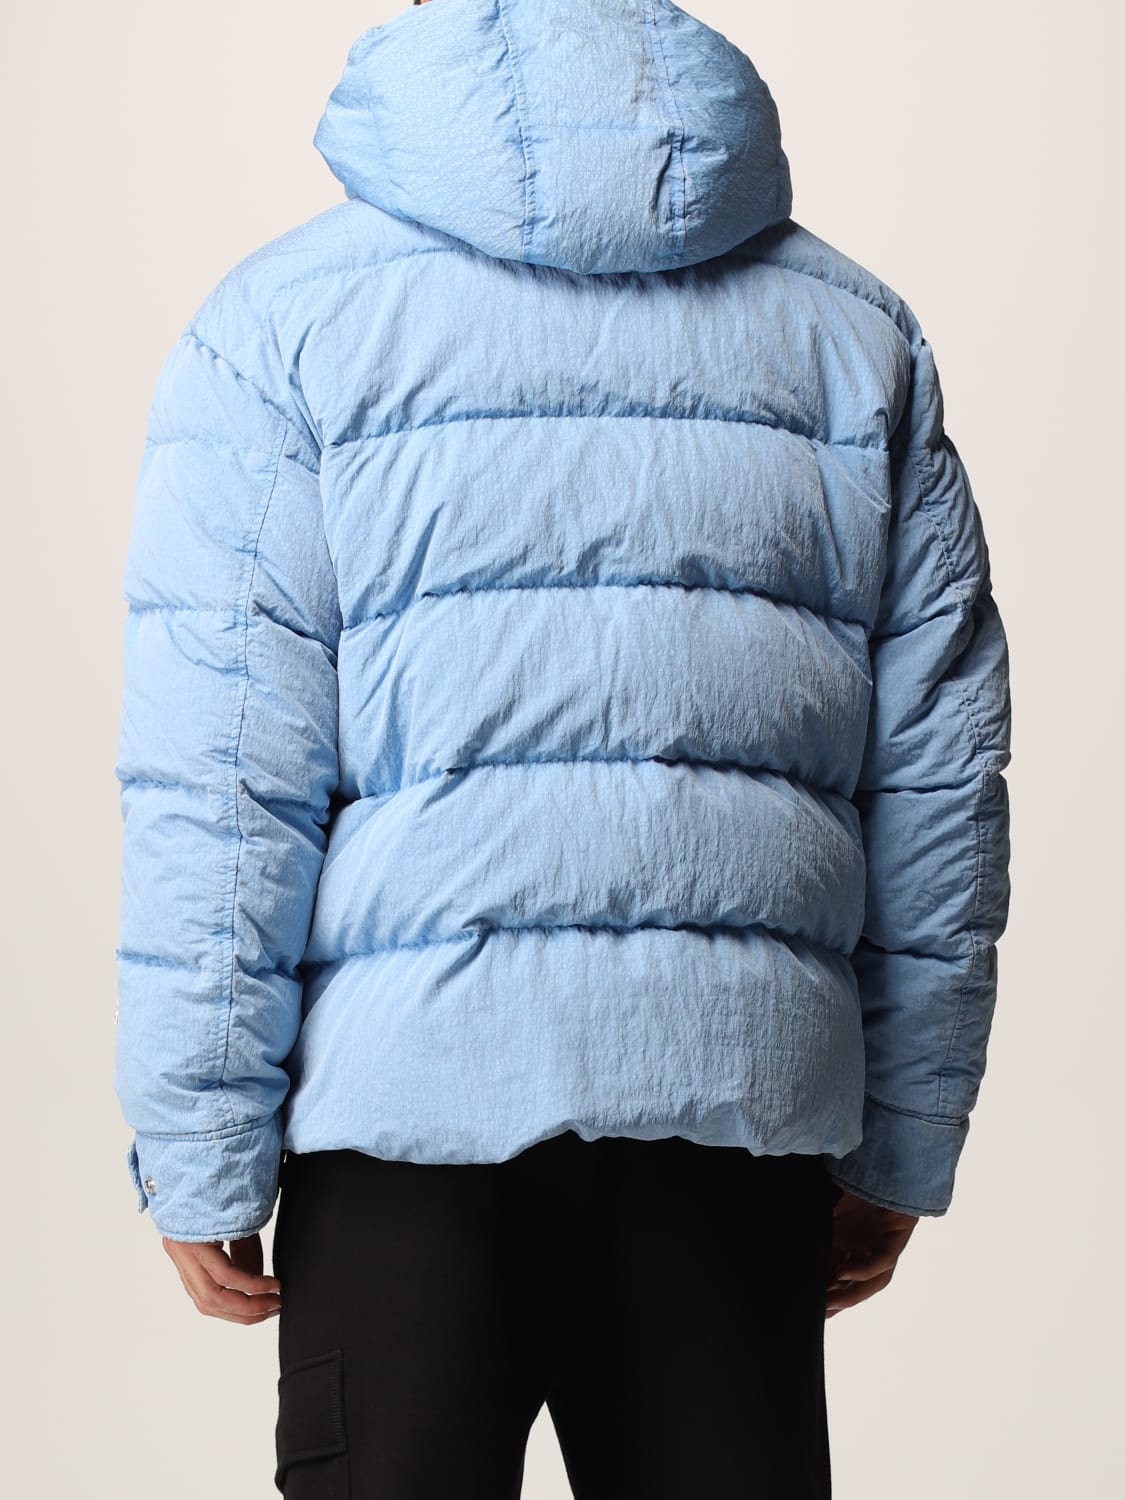 DIESEL: Padded jacket with hood - Sky Blue | Diesel giacca A03057 ...